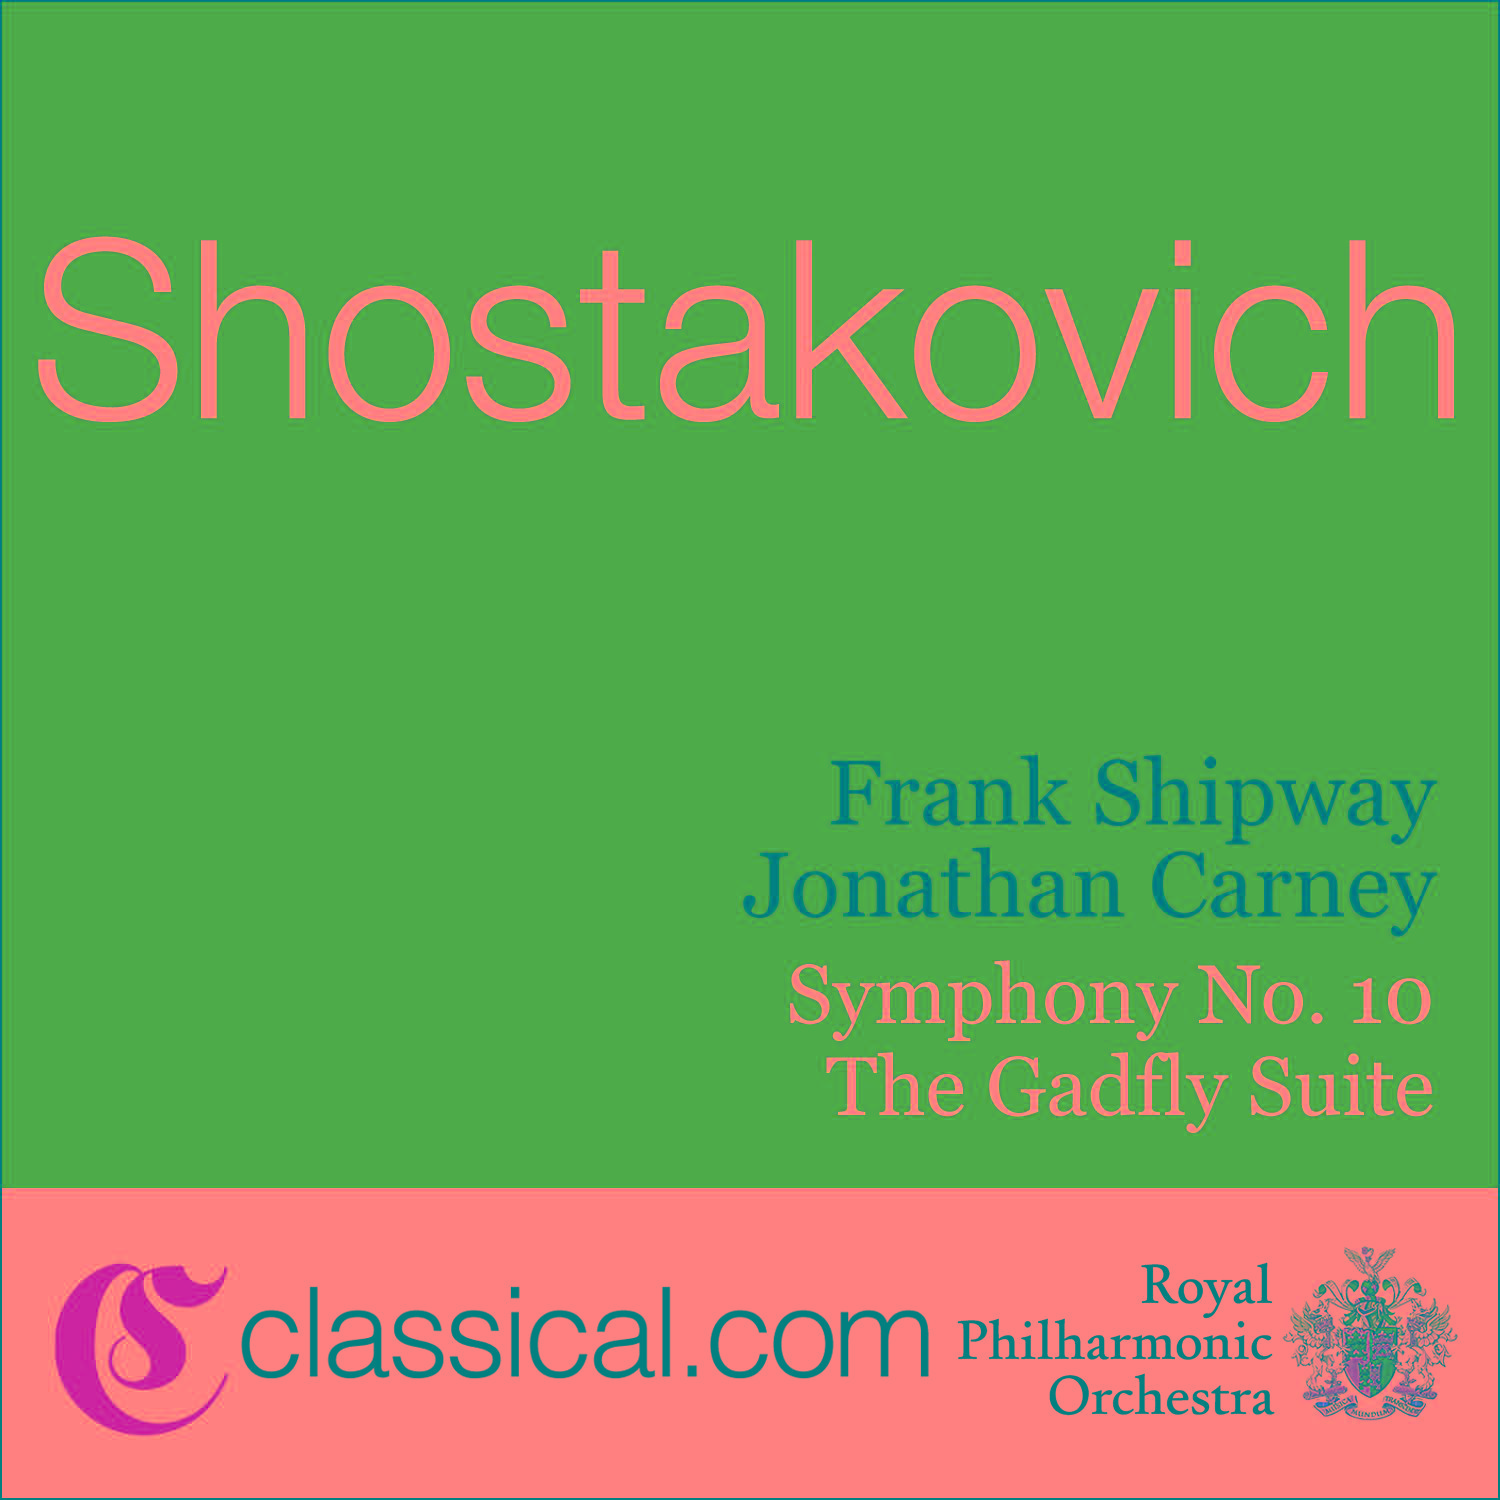 Dimitry Shostakovich, Symphony No. 10 In E Minor, Op. 93